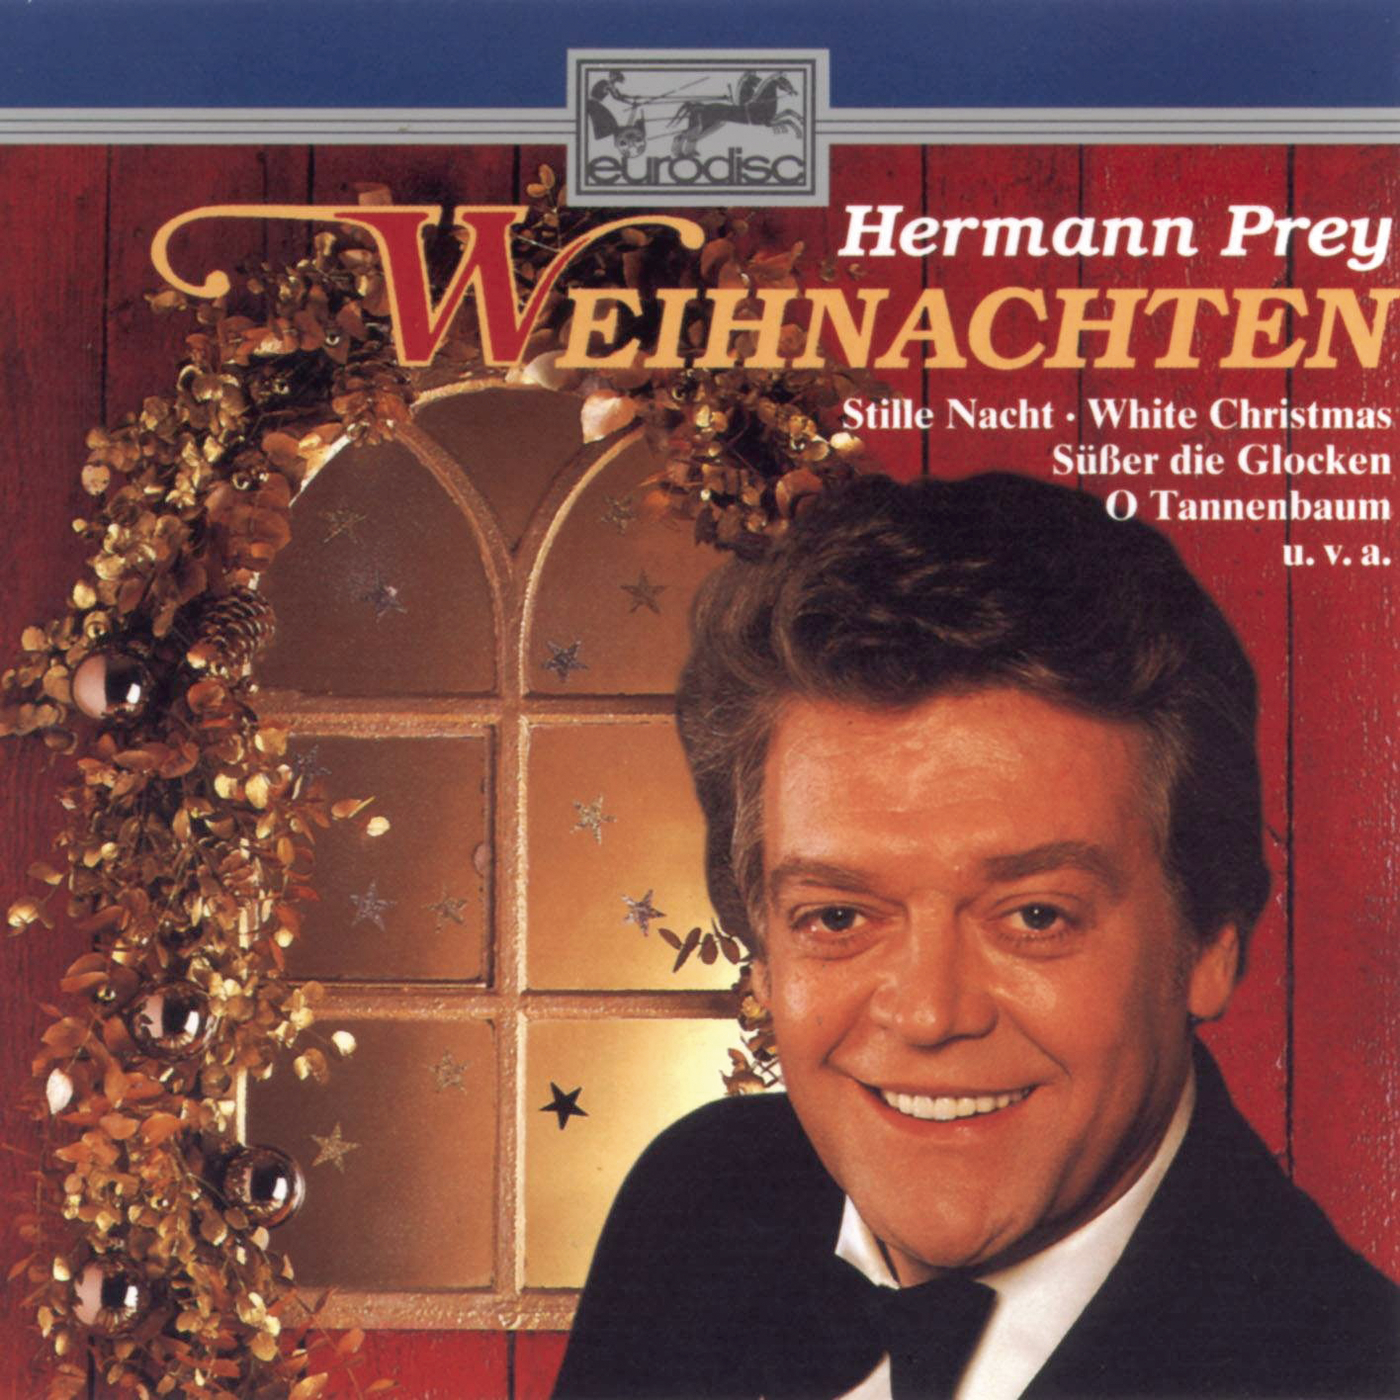 Weihnachten mit Hermann Prey